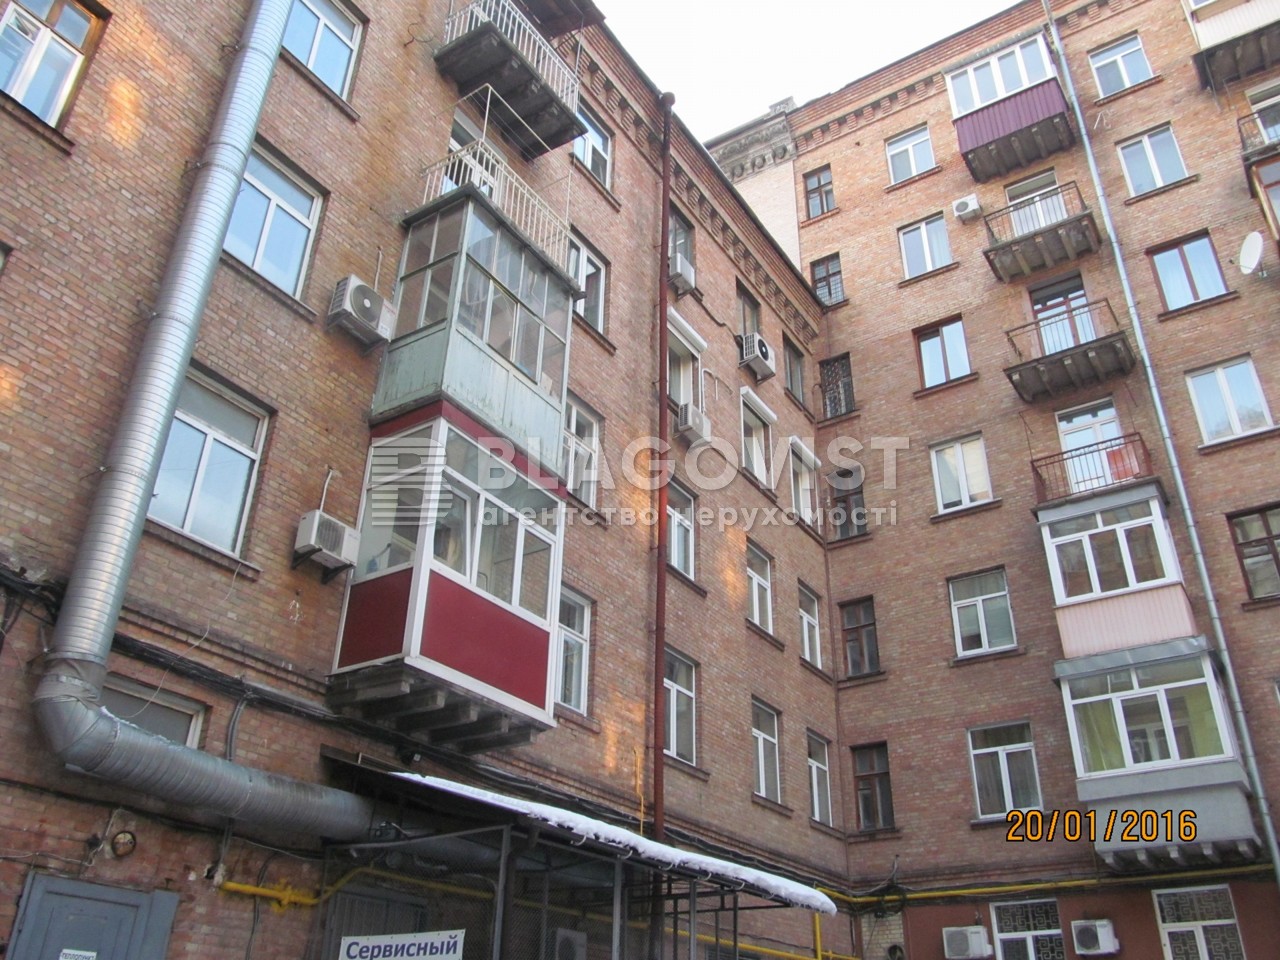  Нежилое помещение, Прорезная (Центр), Киев, M-28926 - Фото 8